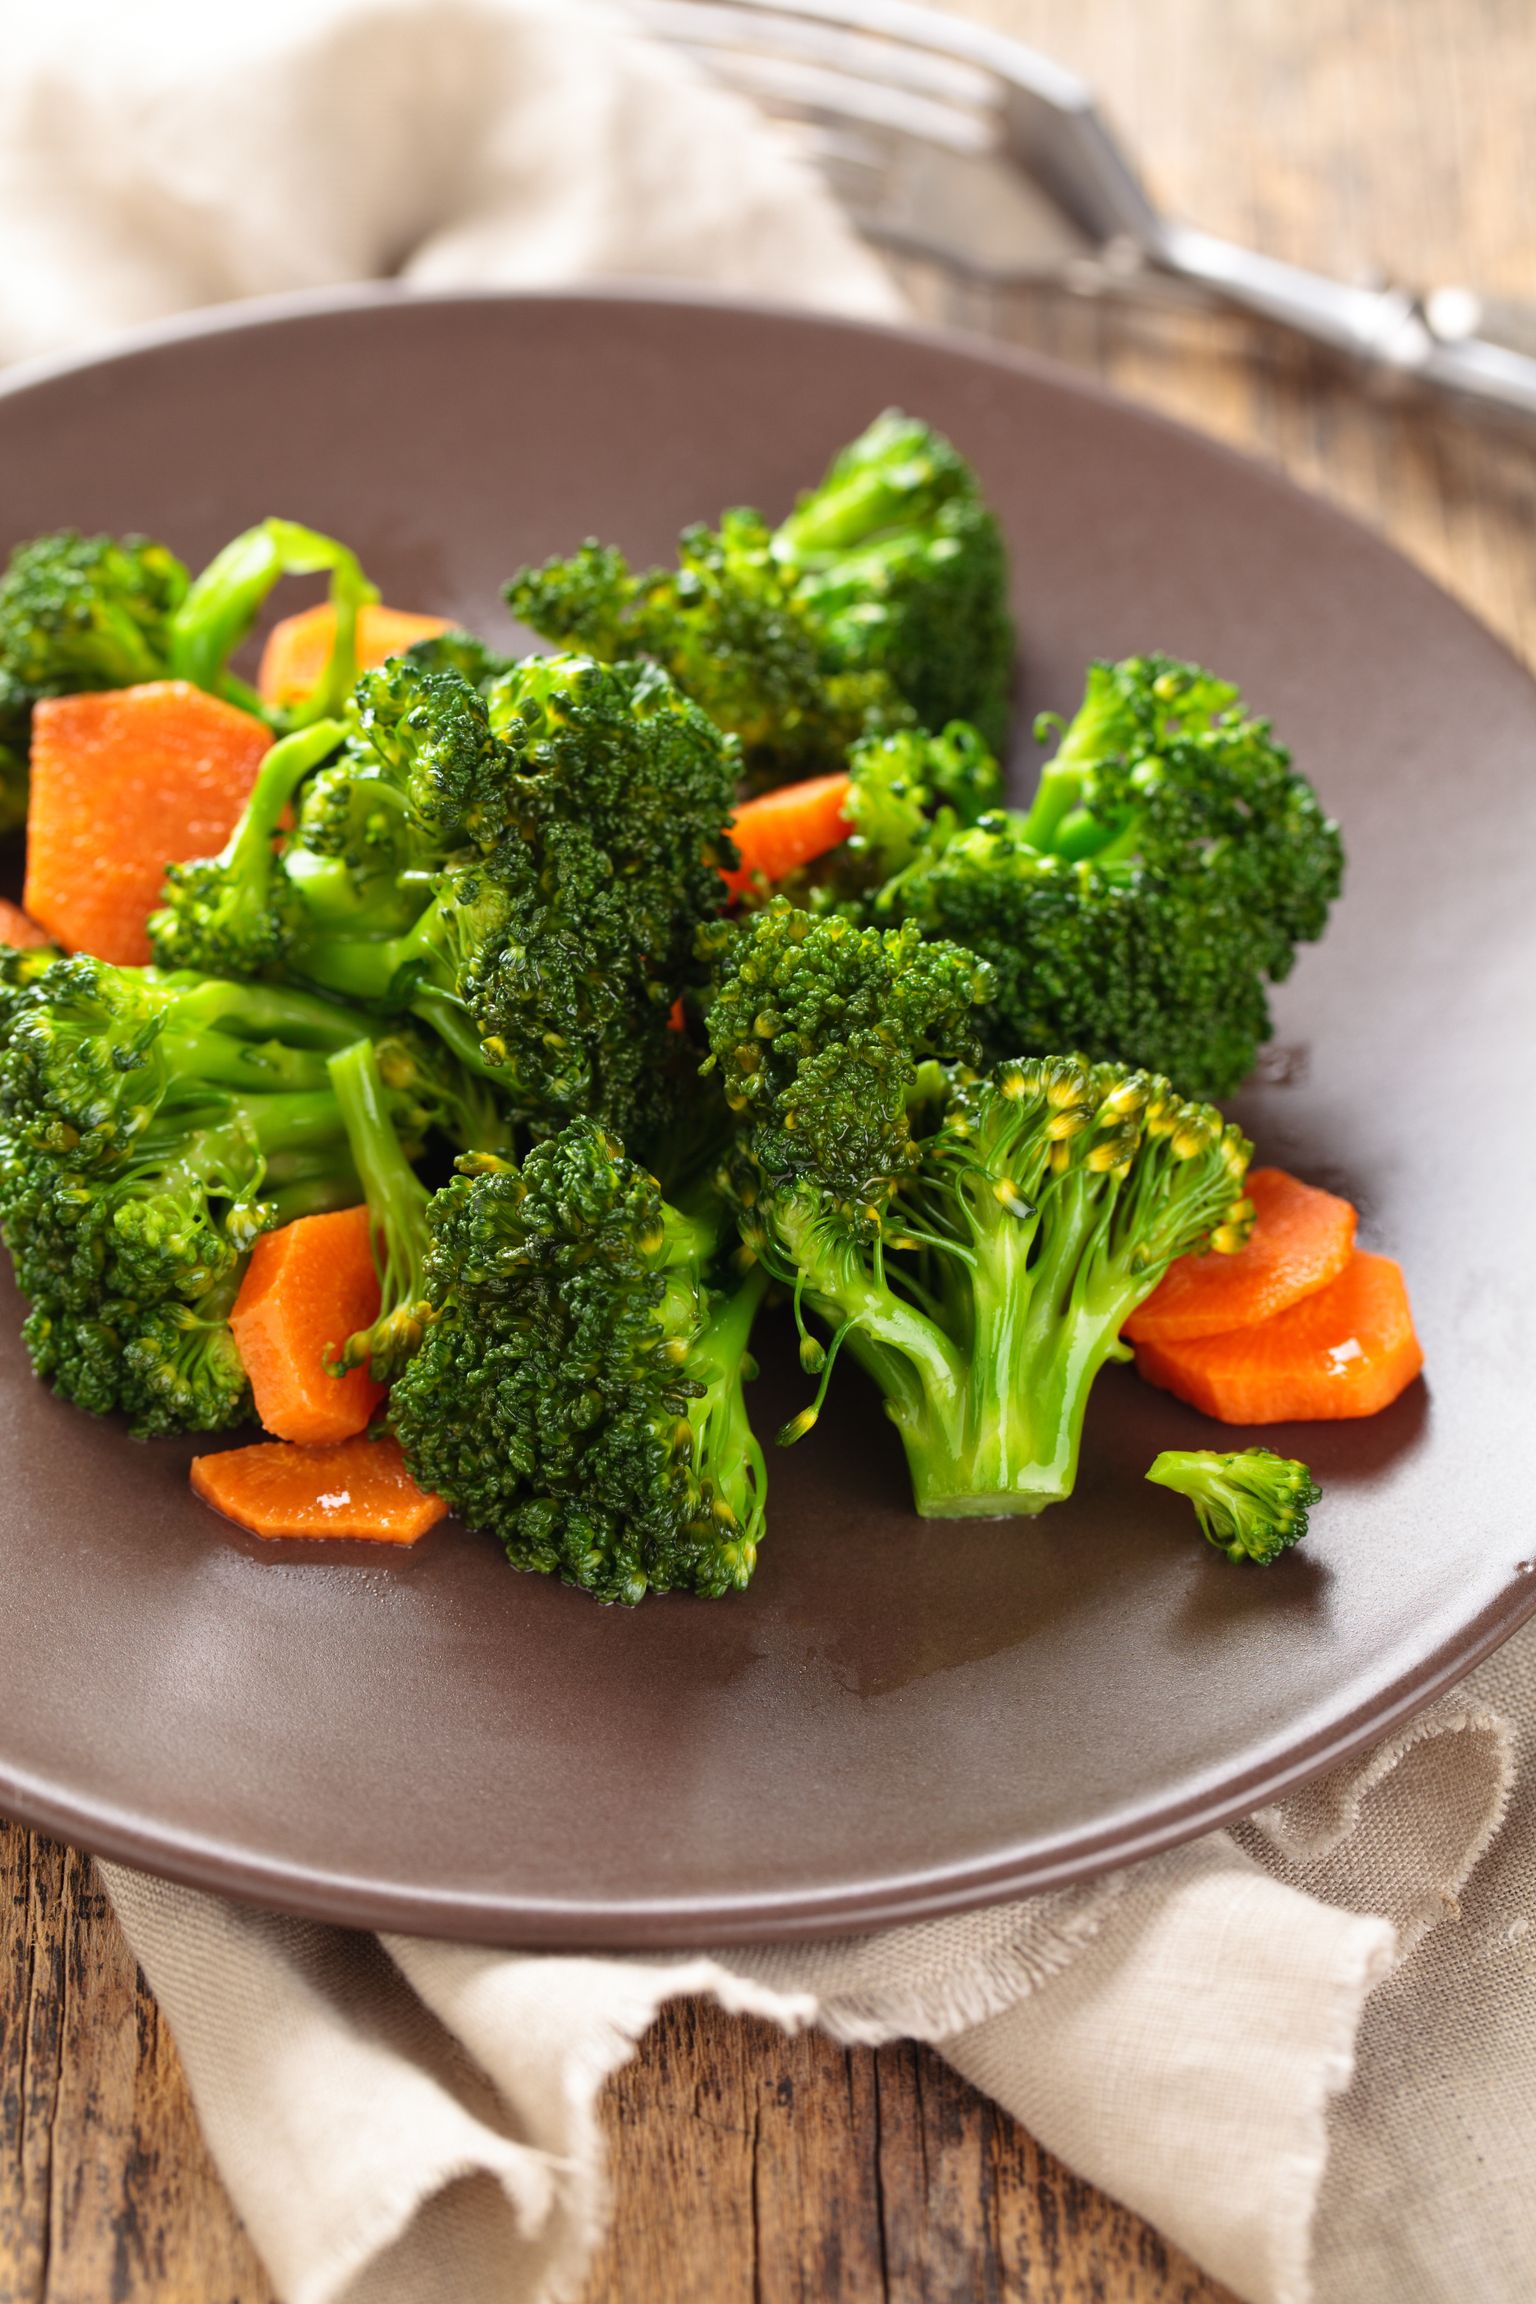 Lisaks brokolile sisaldub koostisosa veel kapsas, lillkapsas, Brüsselikapsas ja lehtkapsas.